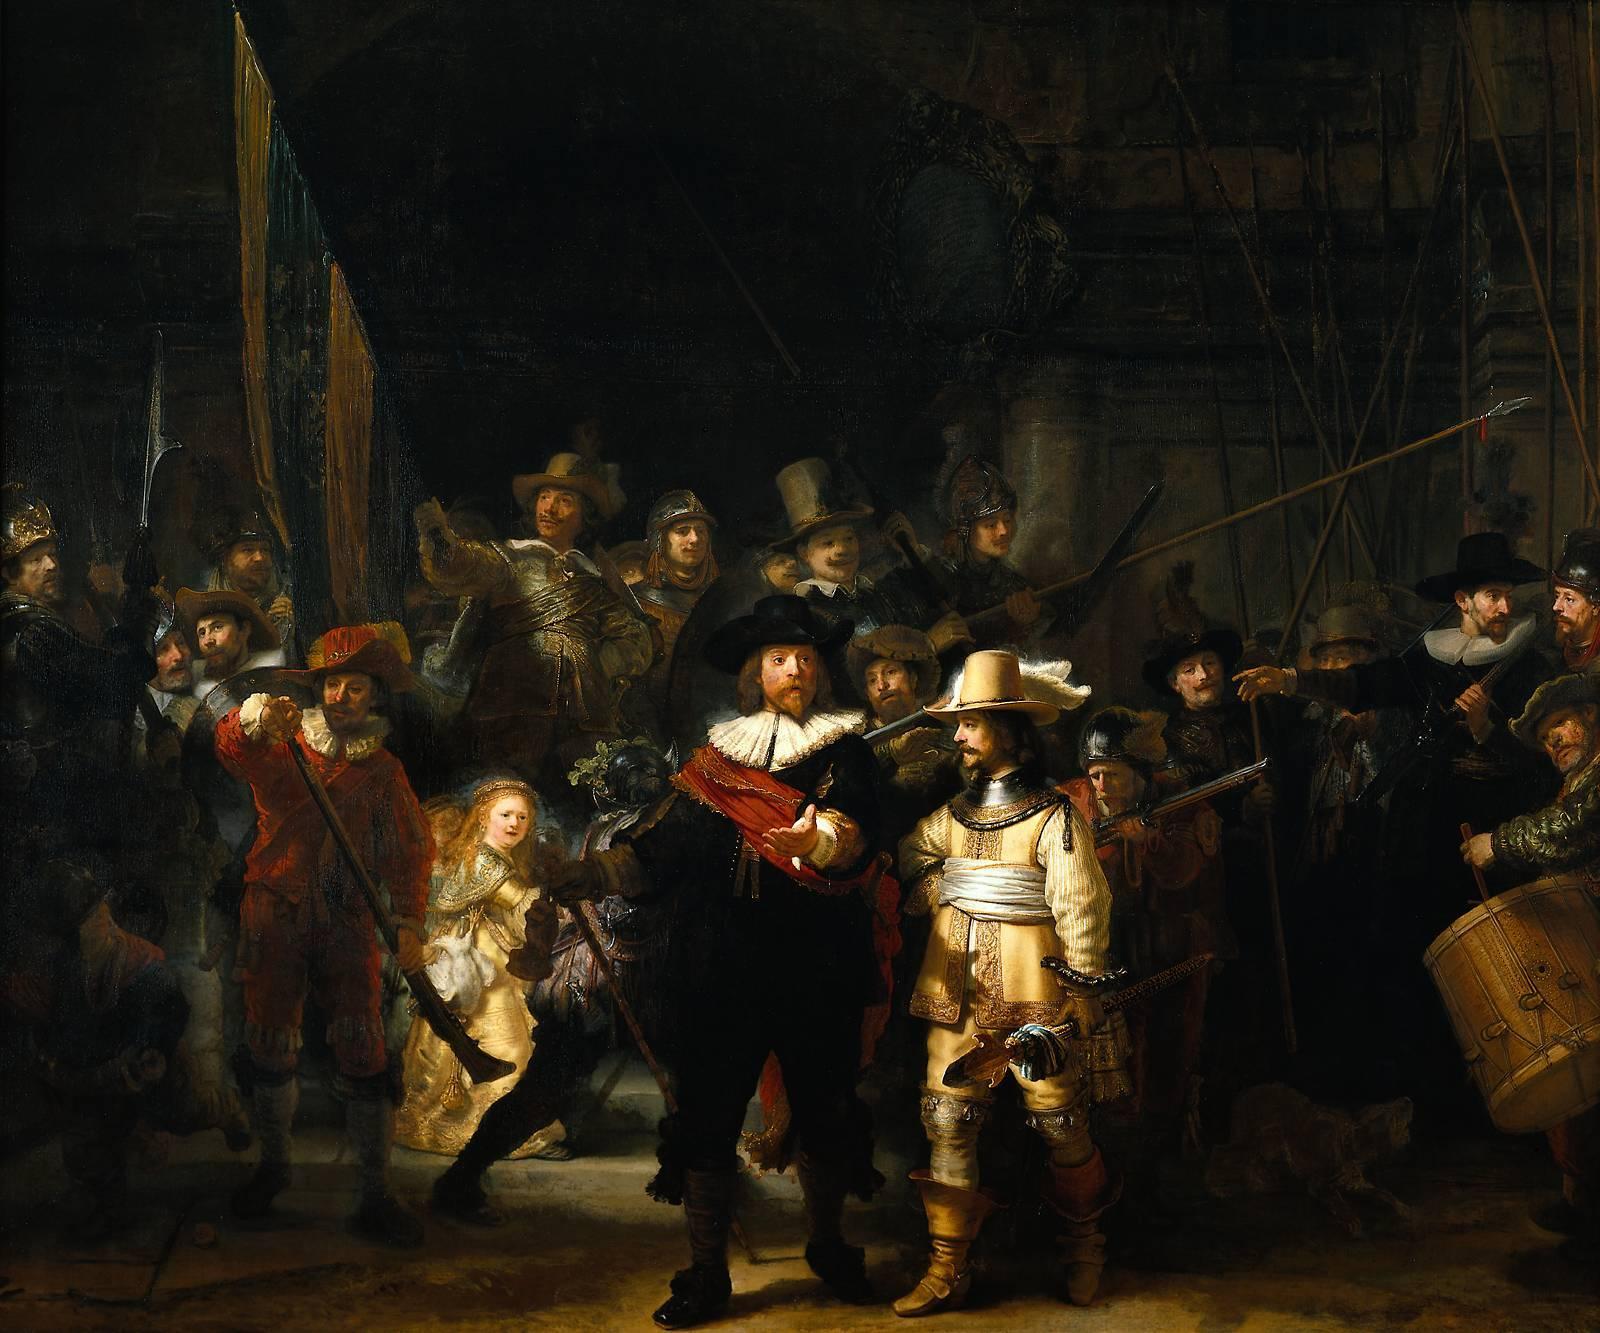 Ved første øyekast kan «Nattevakten» se kaotisk, men her har ikke Rembrandt overlatt mye til tilfeldighetene. Legg merke til hvordan komposisjonen gjør det enkelt for oss å nærmest umiddelbart identifisere bildets tre sentrale personer.